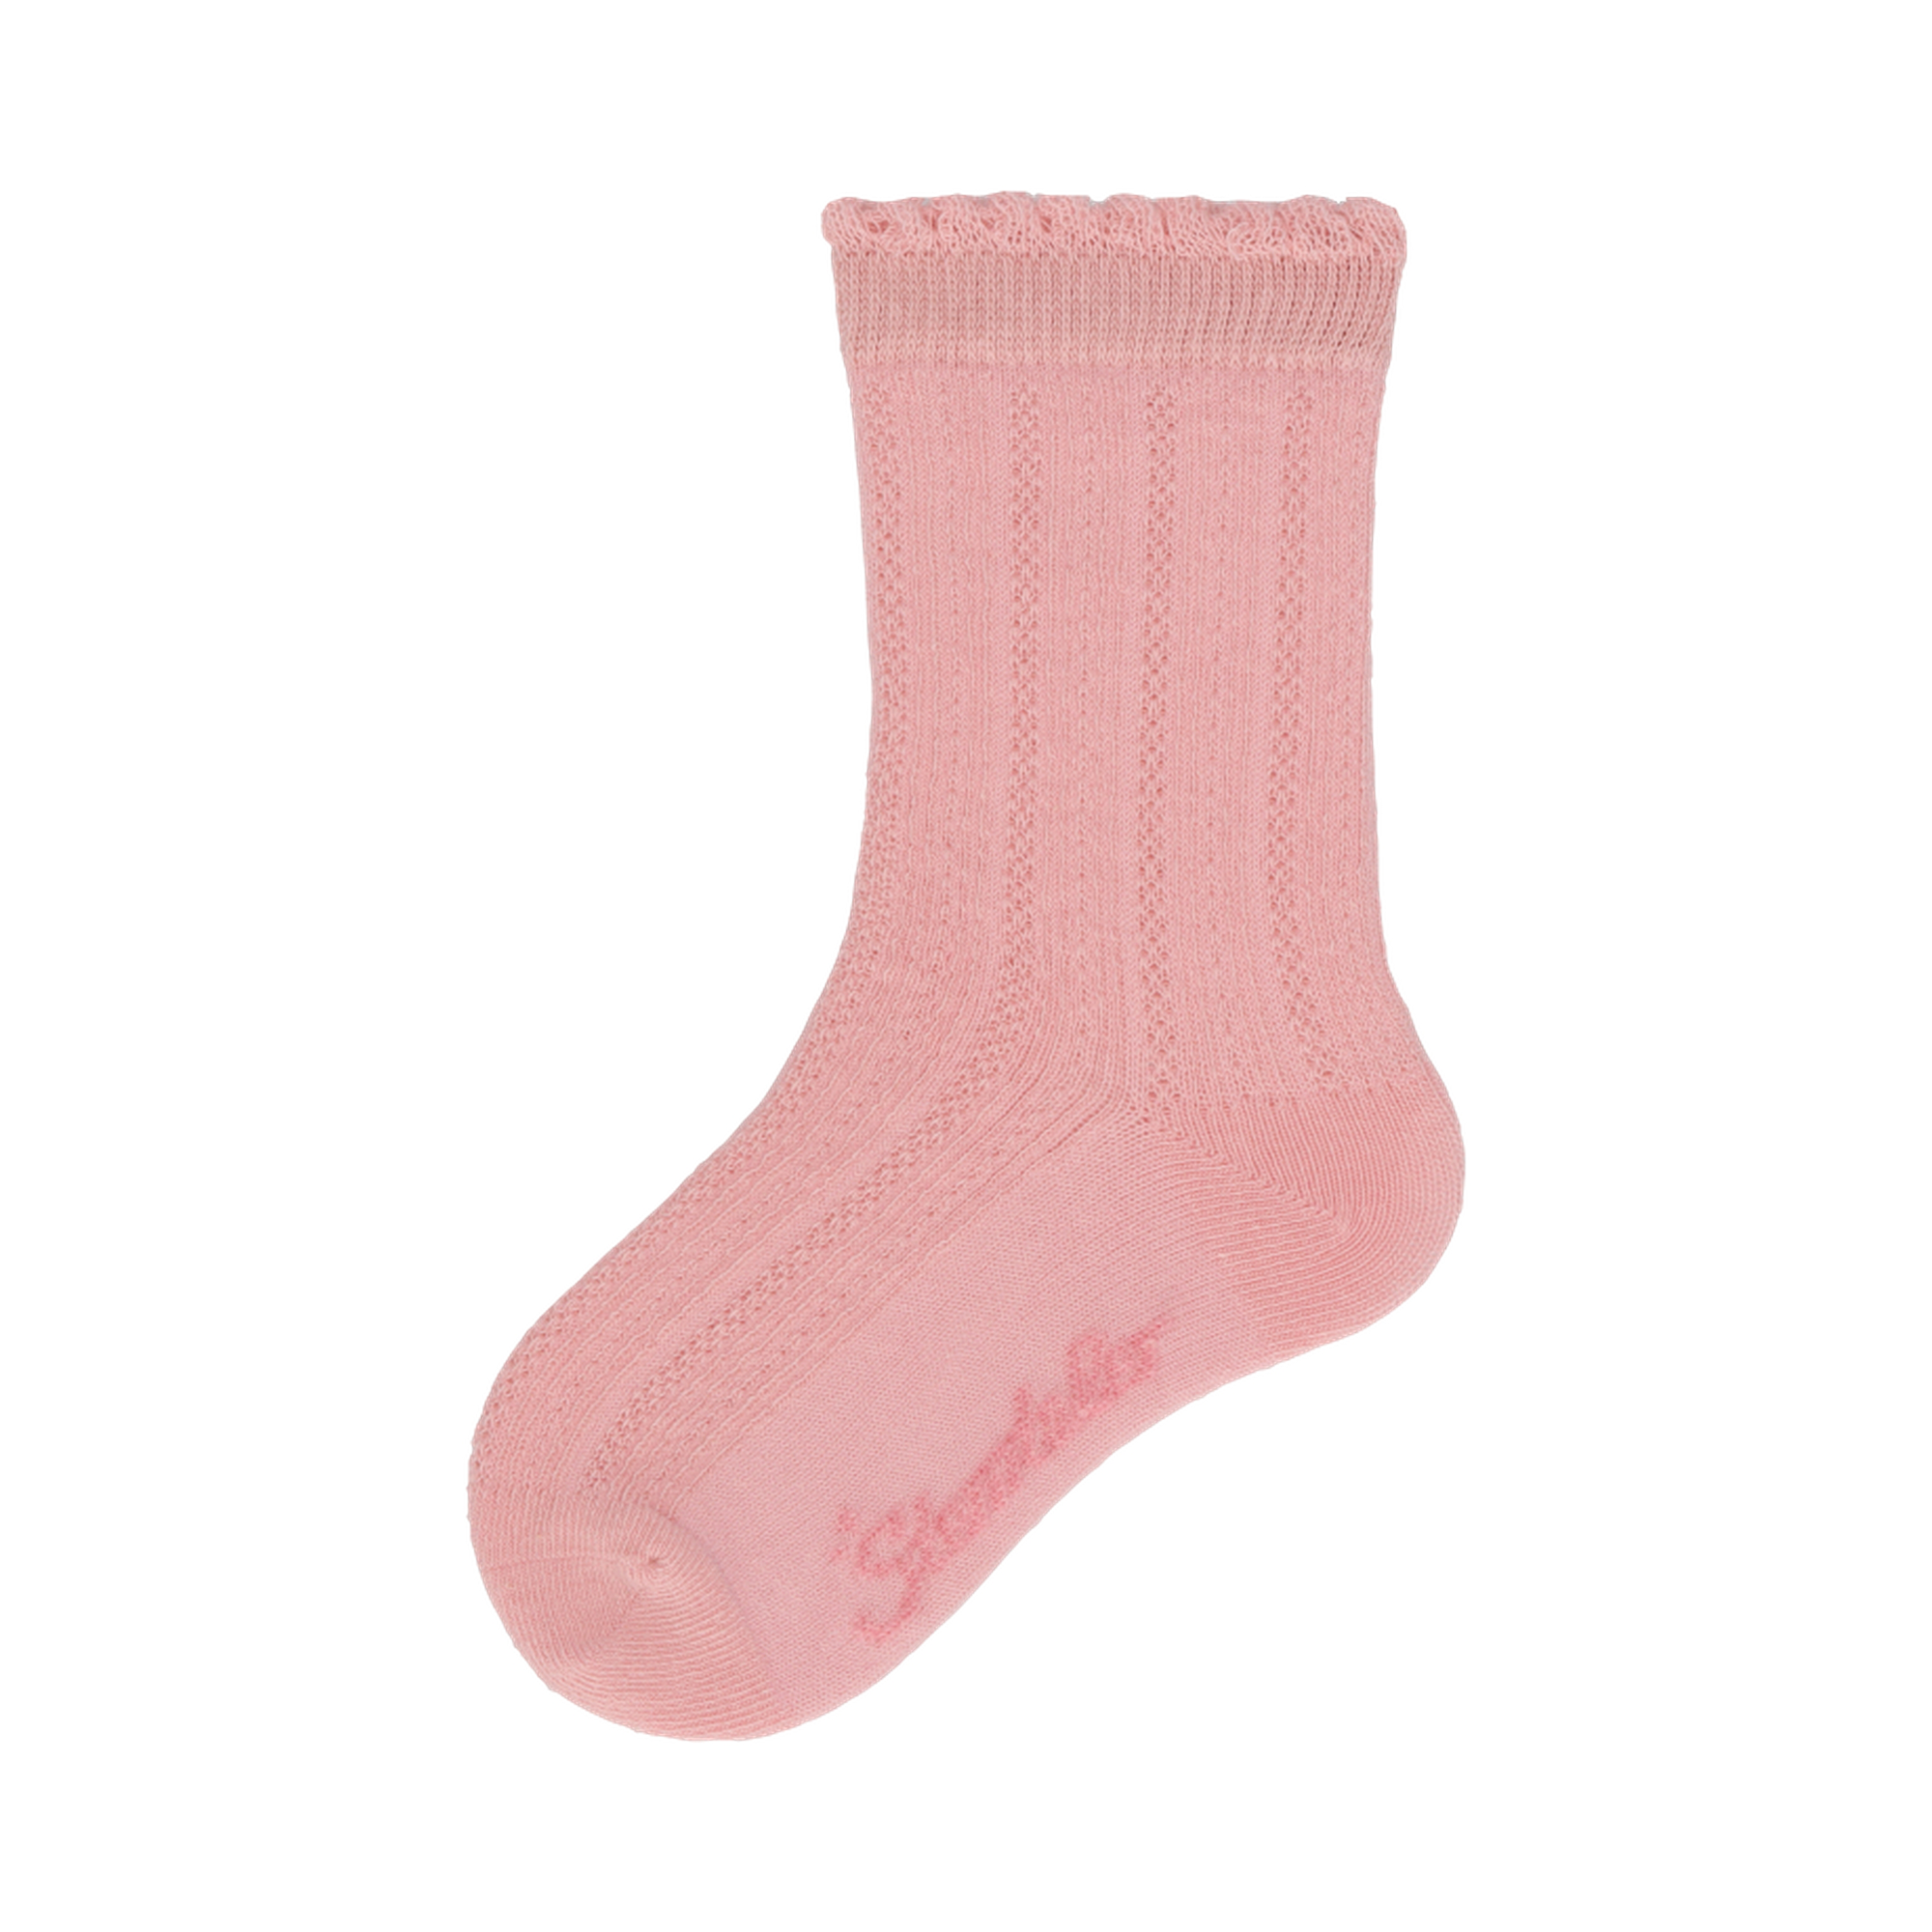 Socken mit Struktur Sterntaler Rosa M2000586076602 2